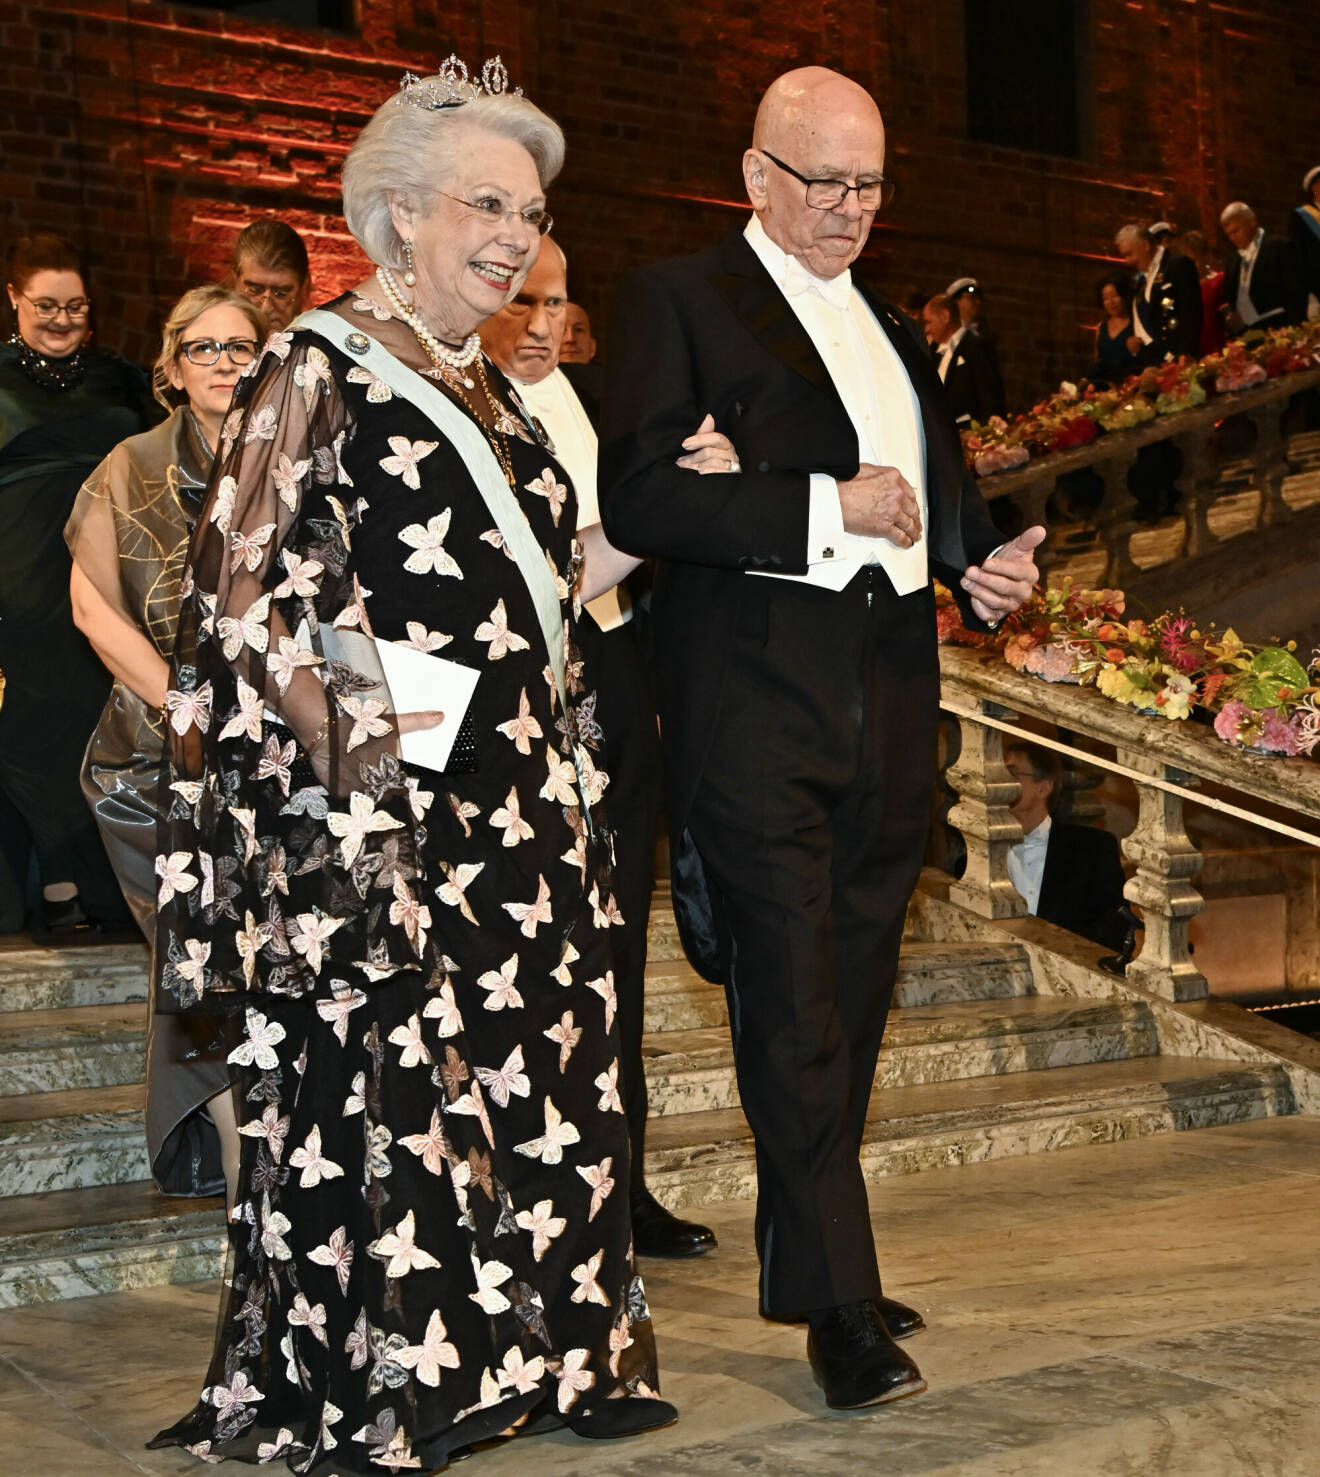 Prinsessan Christina på Nobel 2022 i klänning med fjärilar